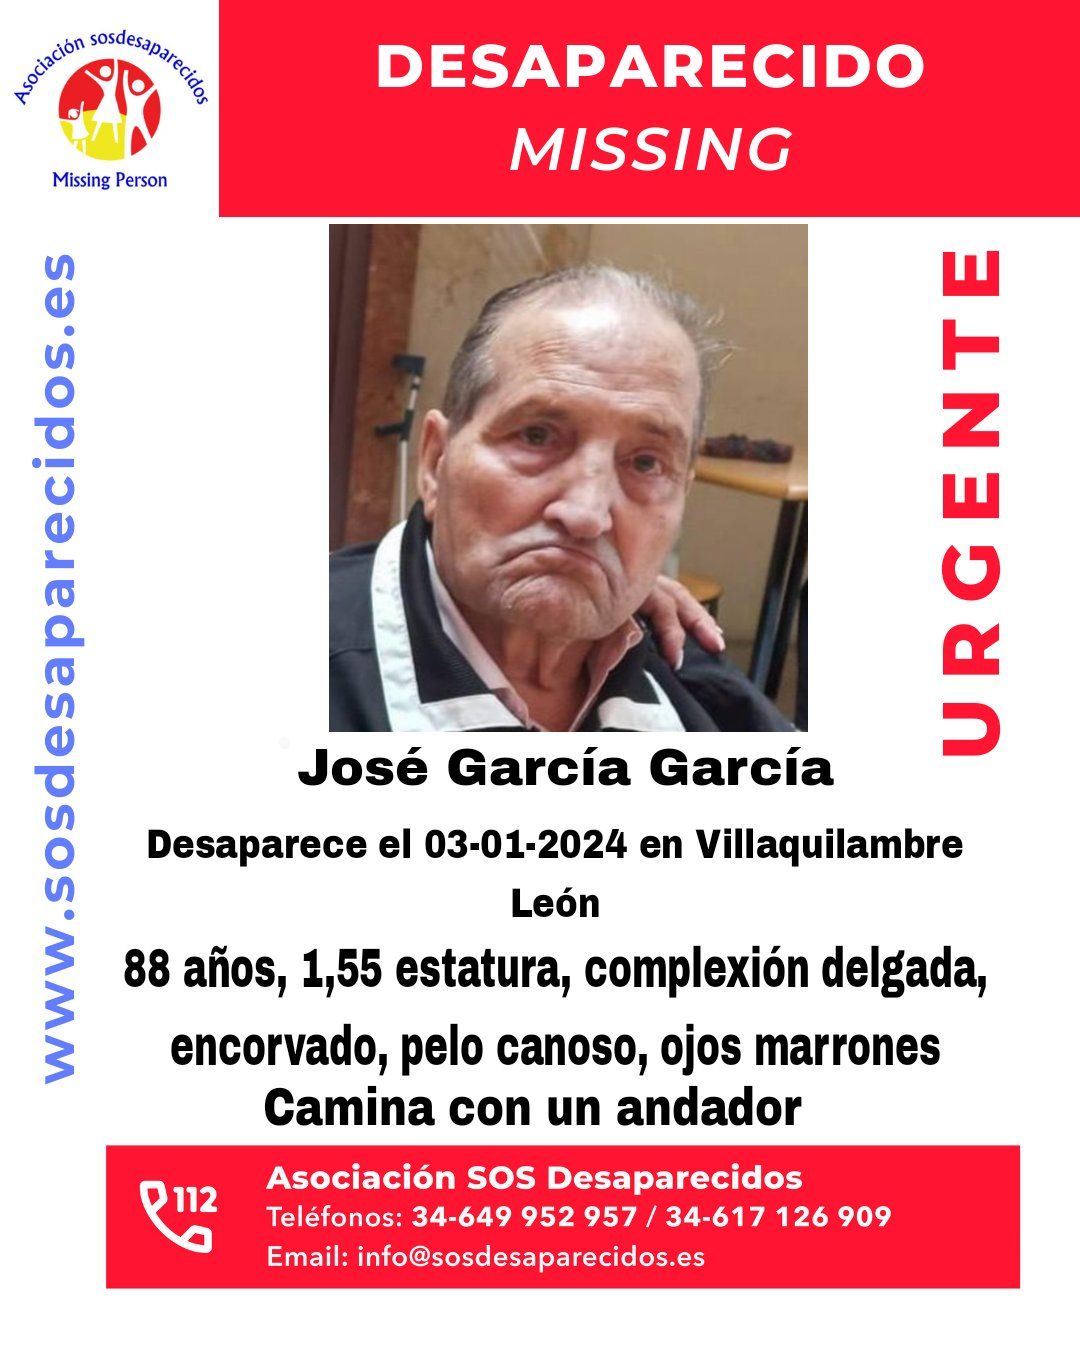 José García García había desaparecido este miércoles en Villaquilambre.